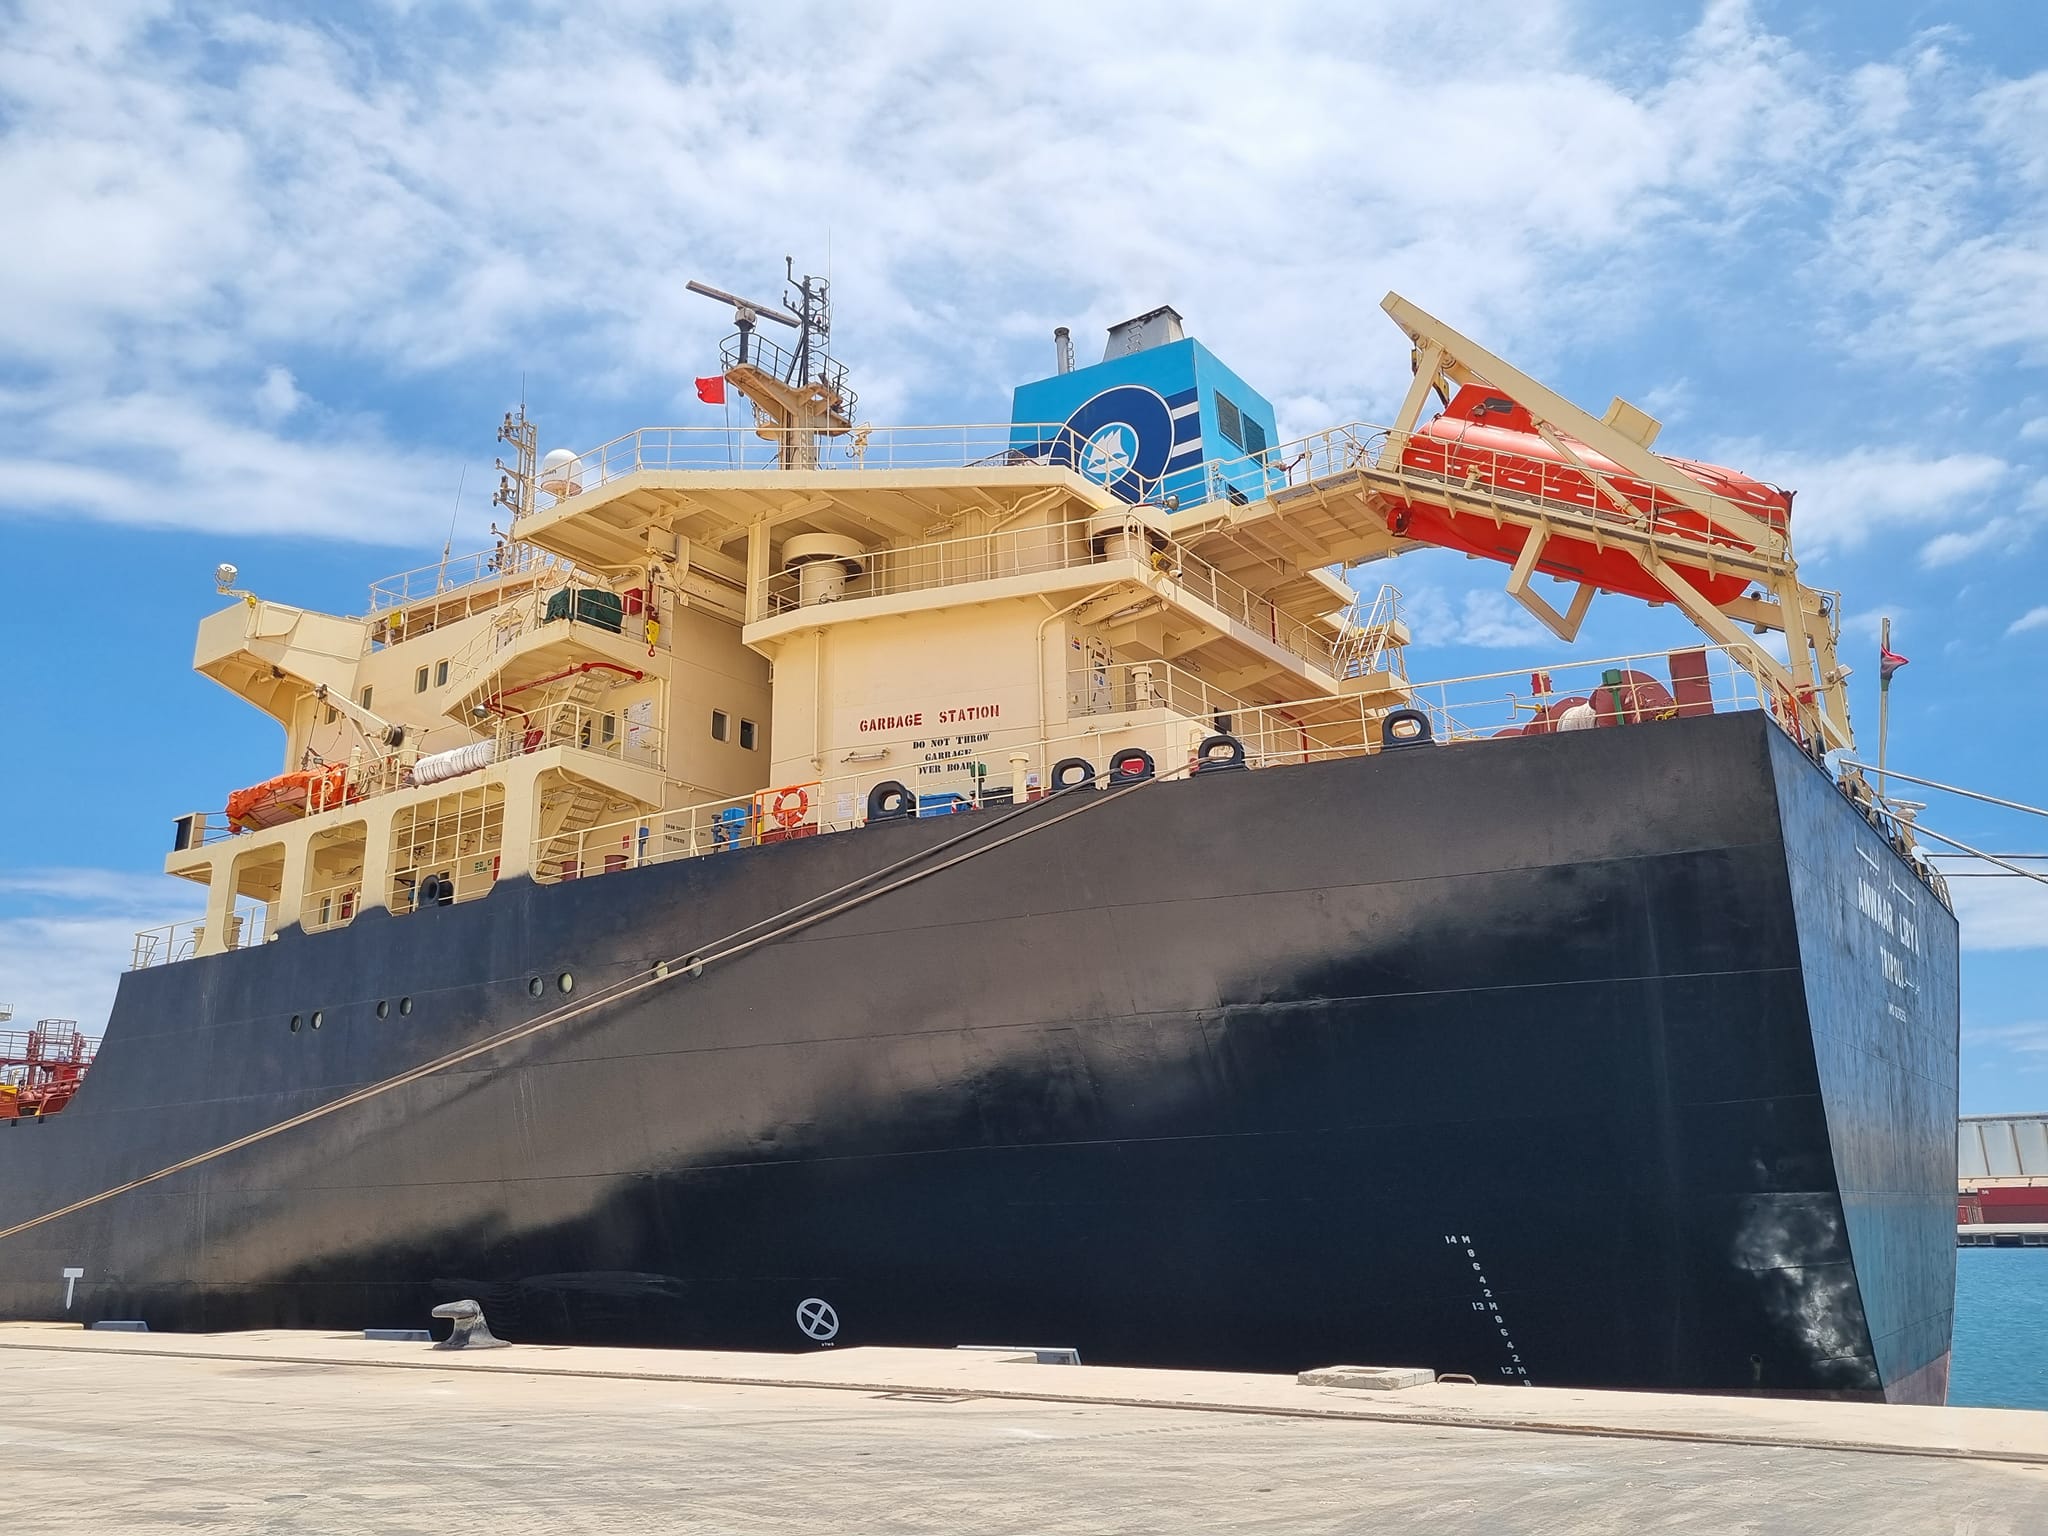 وصول الناقلة أنوار ليبيا إلى ميناء مصراتة البحري محملة بـ25 ألف طن من البنزين